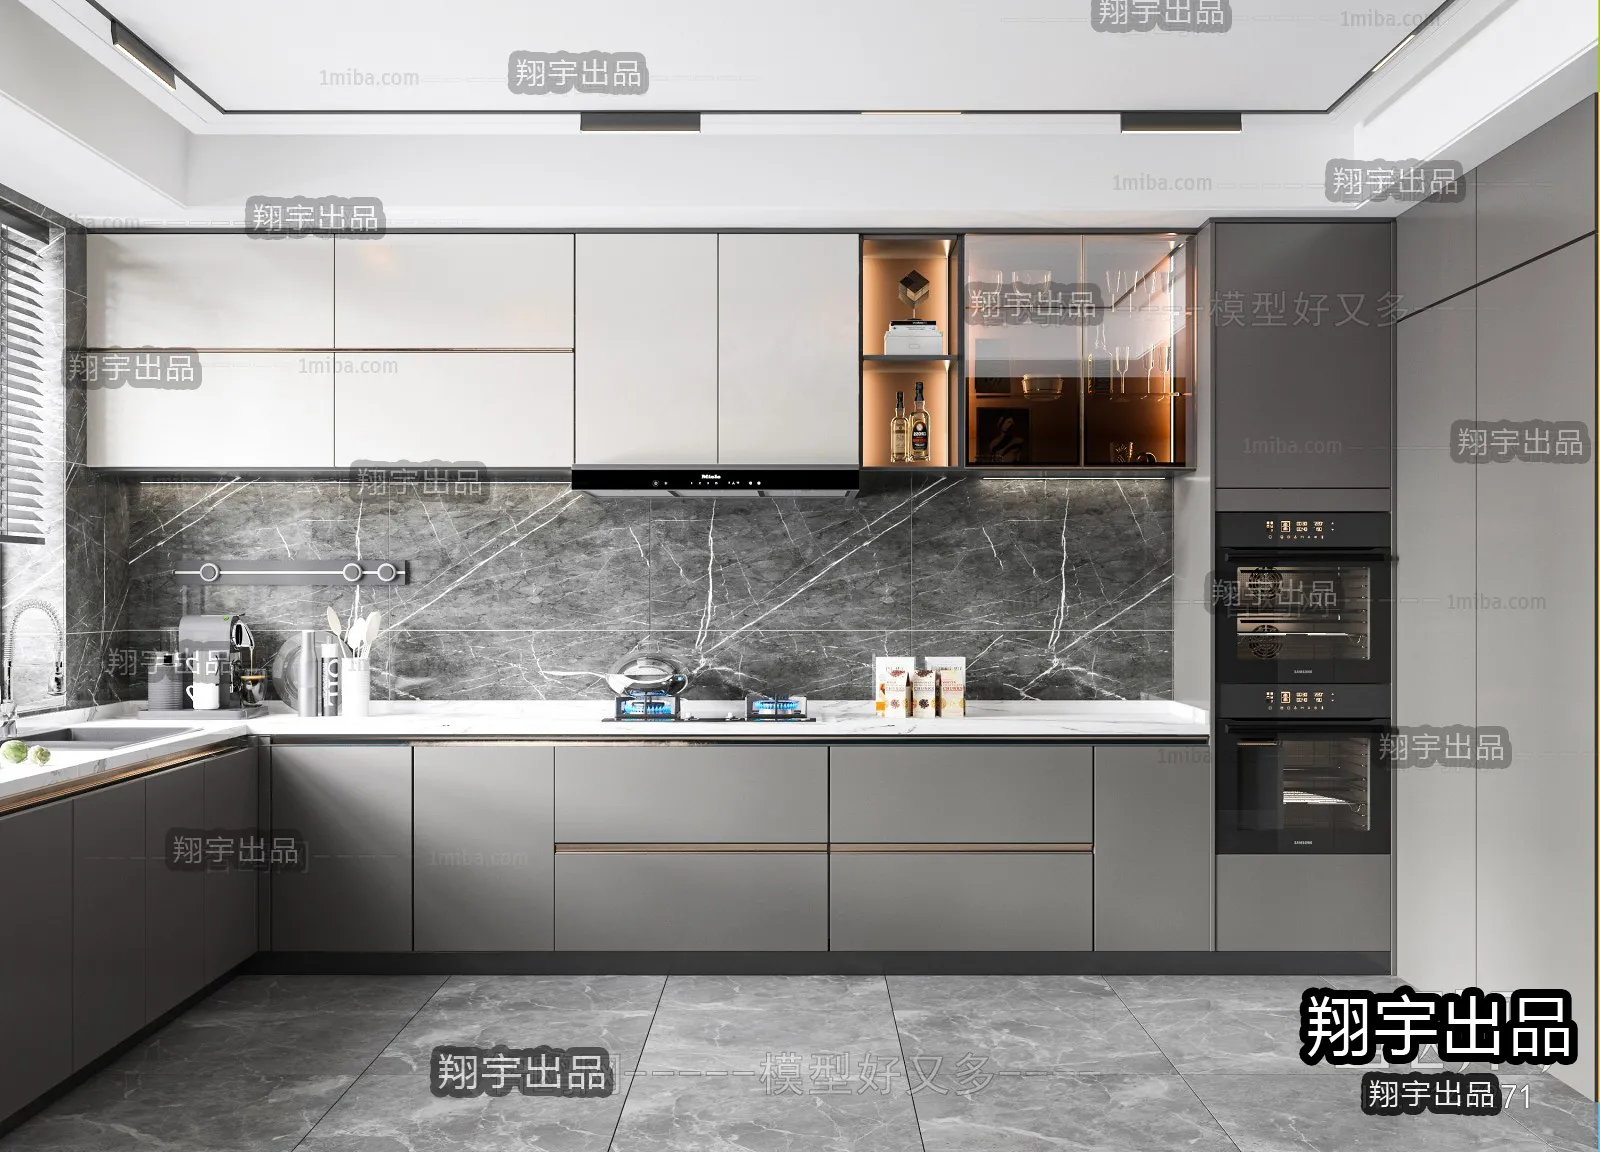 Kitchen – Modern Interior Design – 3D Models – 002